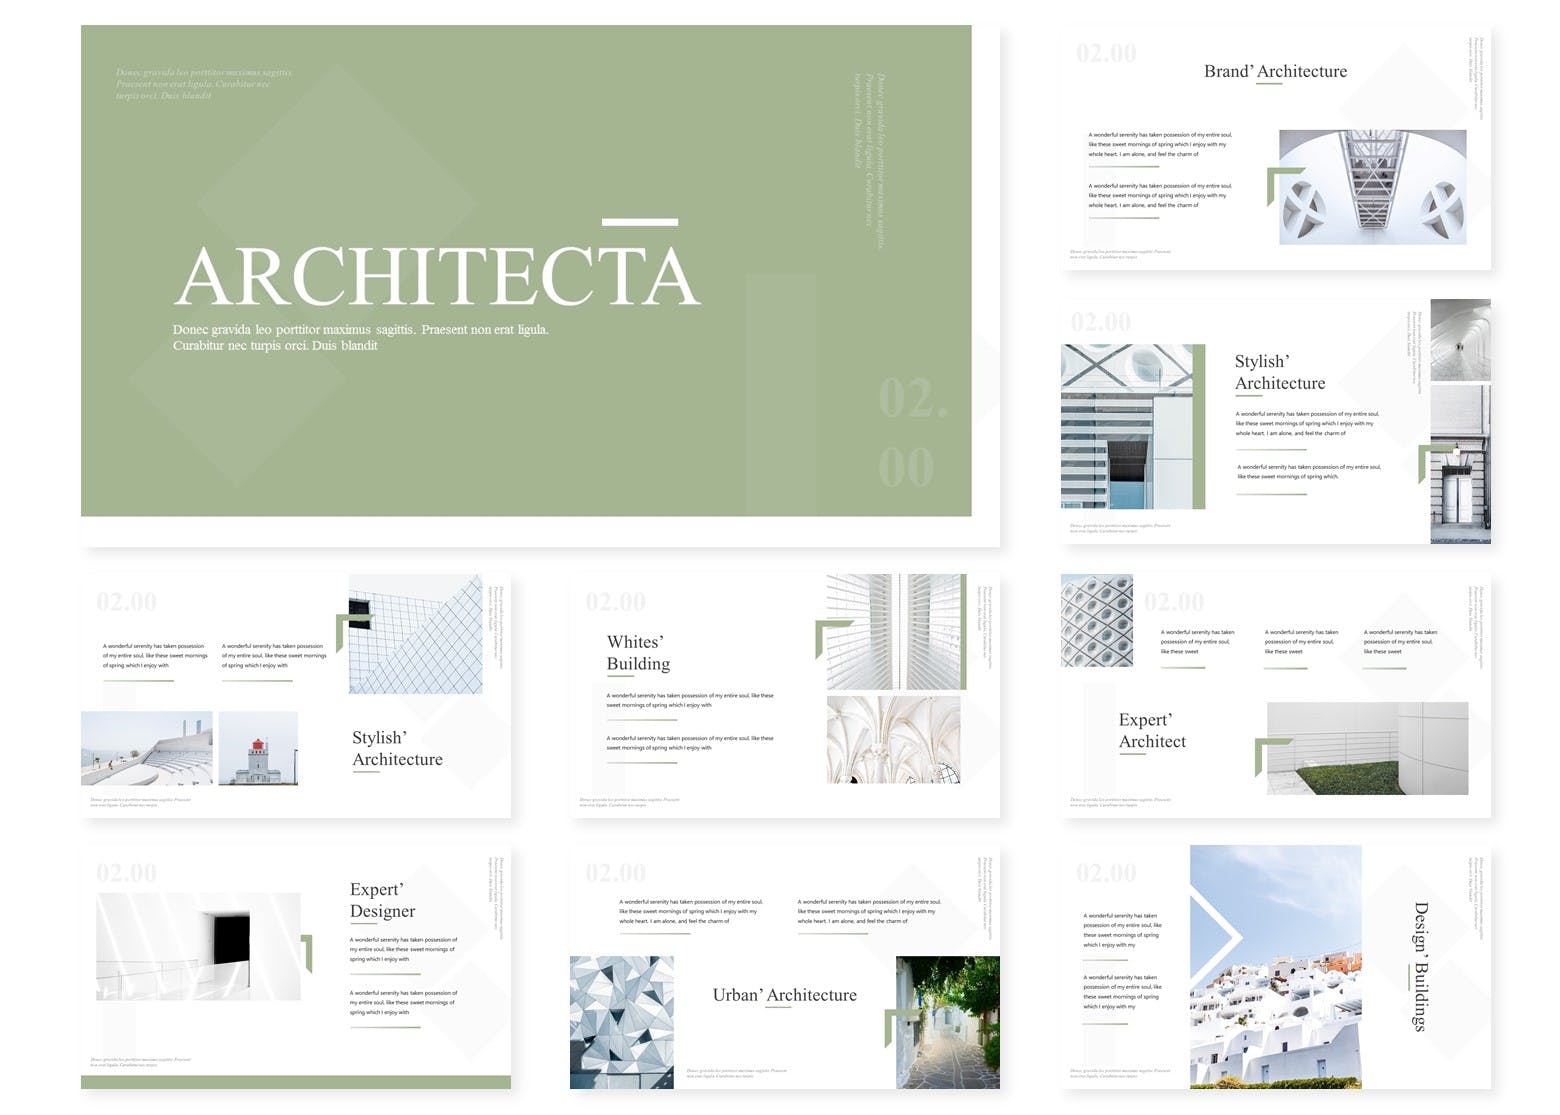 建筑设计公司PPT幻灯片设计模板 Architecta | Powerpoint Template插图(1)